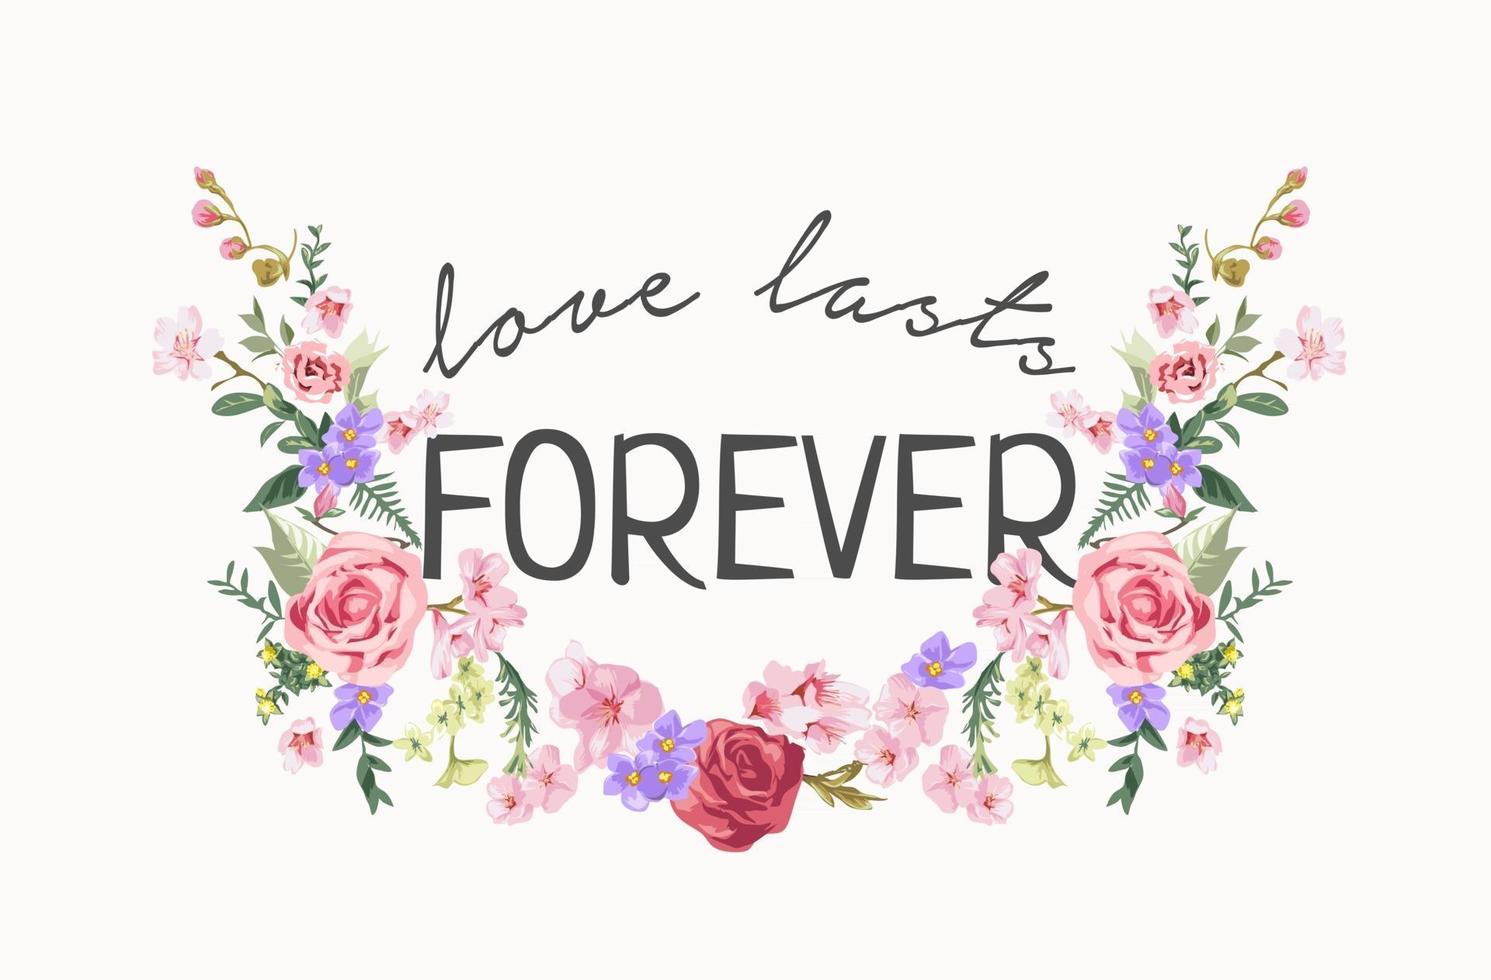 liefde duurt voor altijd slogan met kleurrijke bloemenillustratie vector